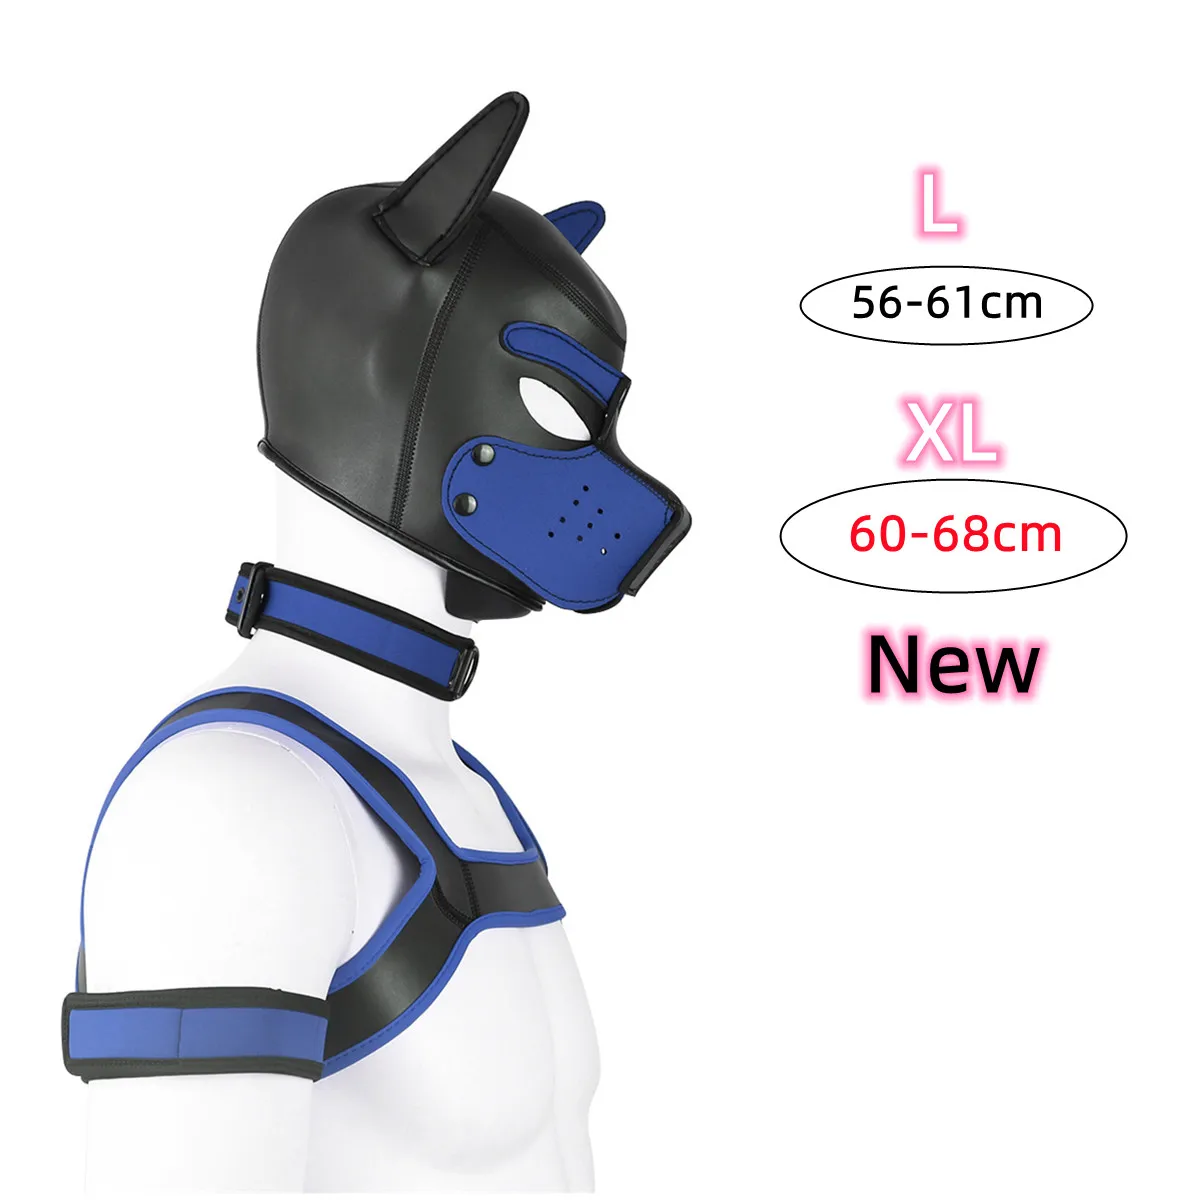 

SM сексуальная собака БДСМ бондаж щенок игровой капюшон ведомый резиновый Pup маска для игр для взрослых пары фетиш флирт игры игрушки для эро...